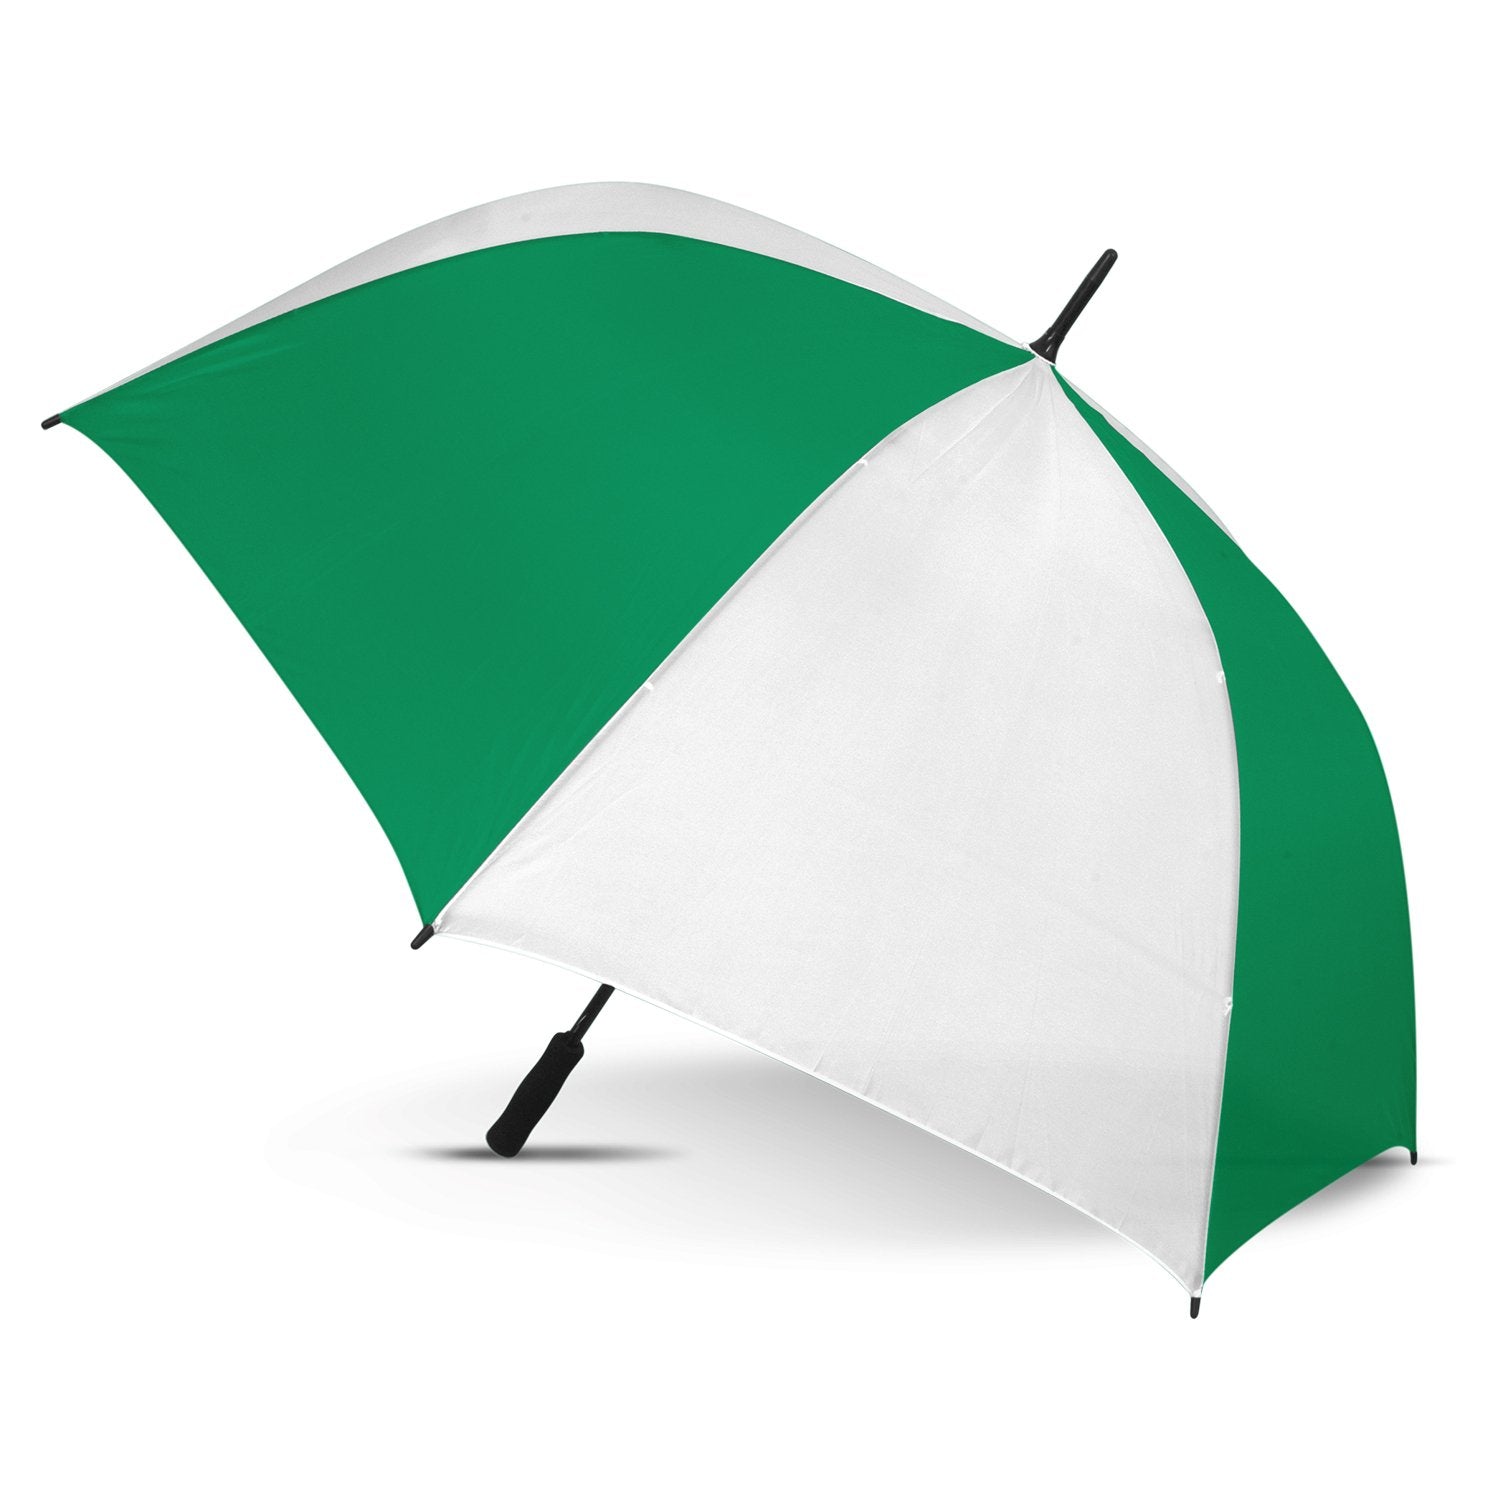 STORM-PROOF®️-premium-sports-umbrella-auto-open-white-and-dark-green-umbrella